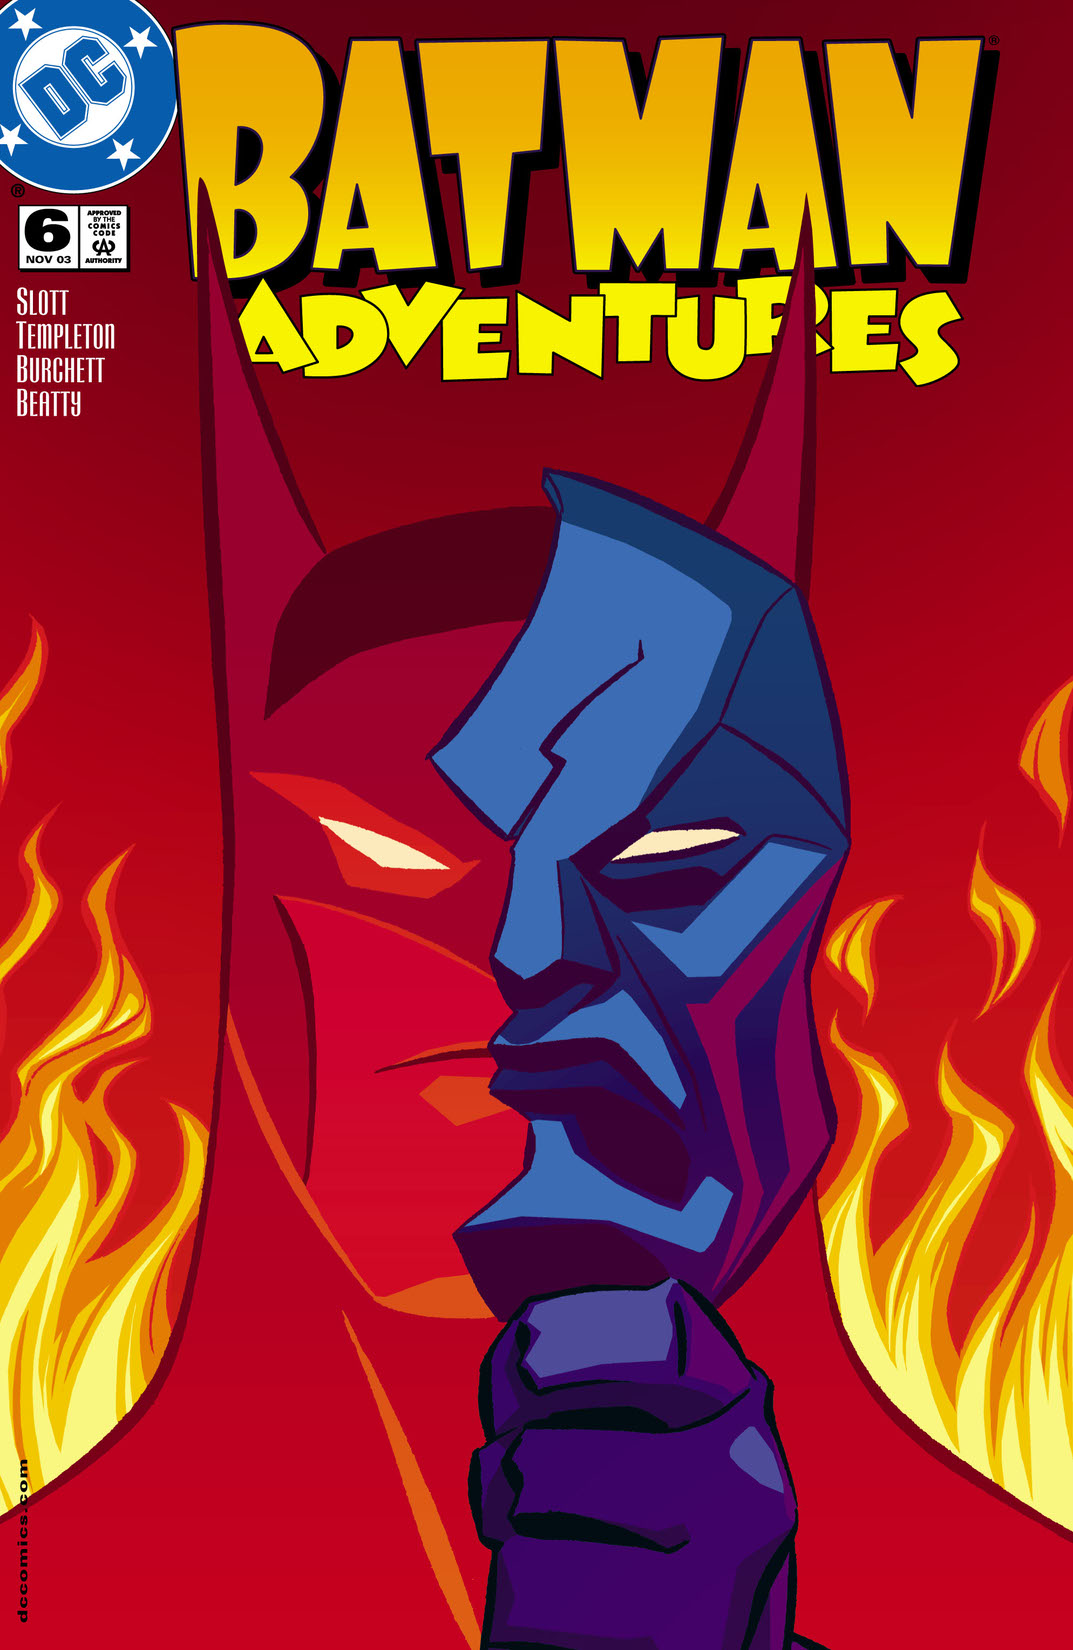 Batman Adventures #6 preview images